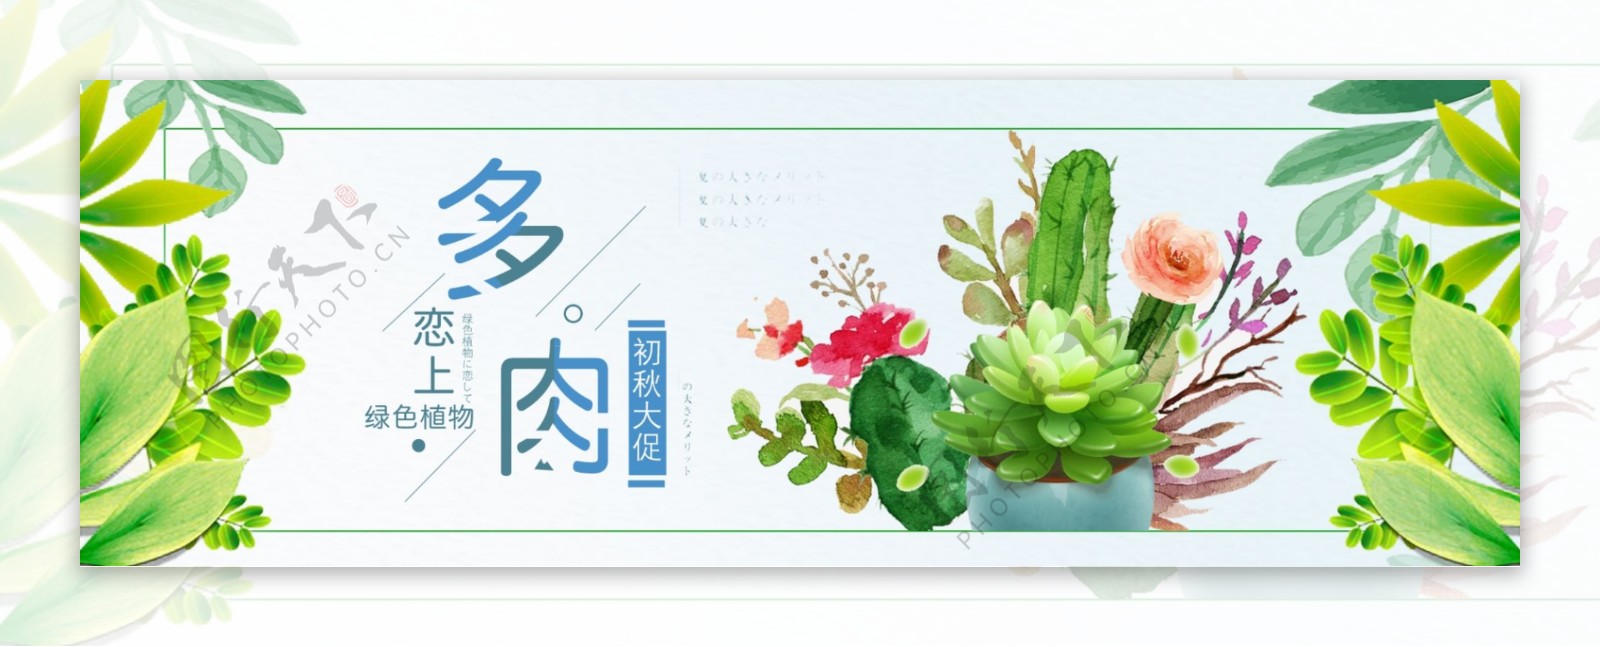 绿色小清新树叶多肉淘宝海报电商banner